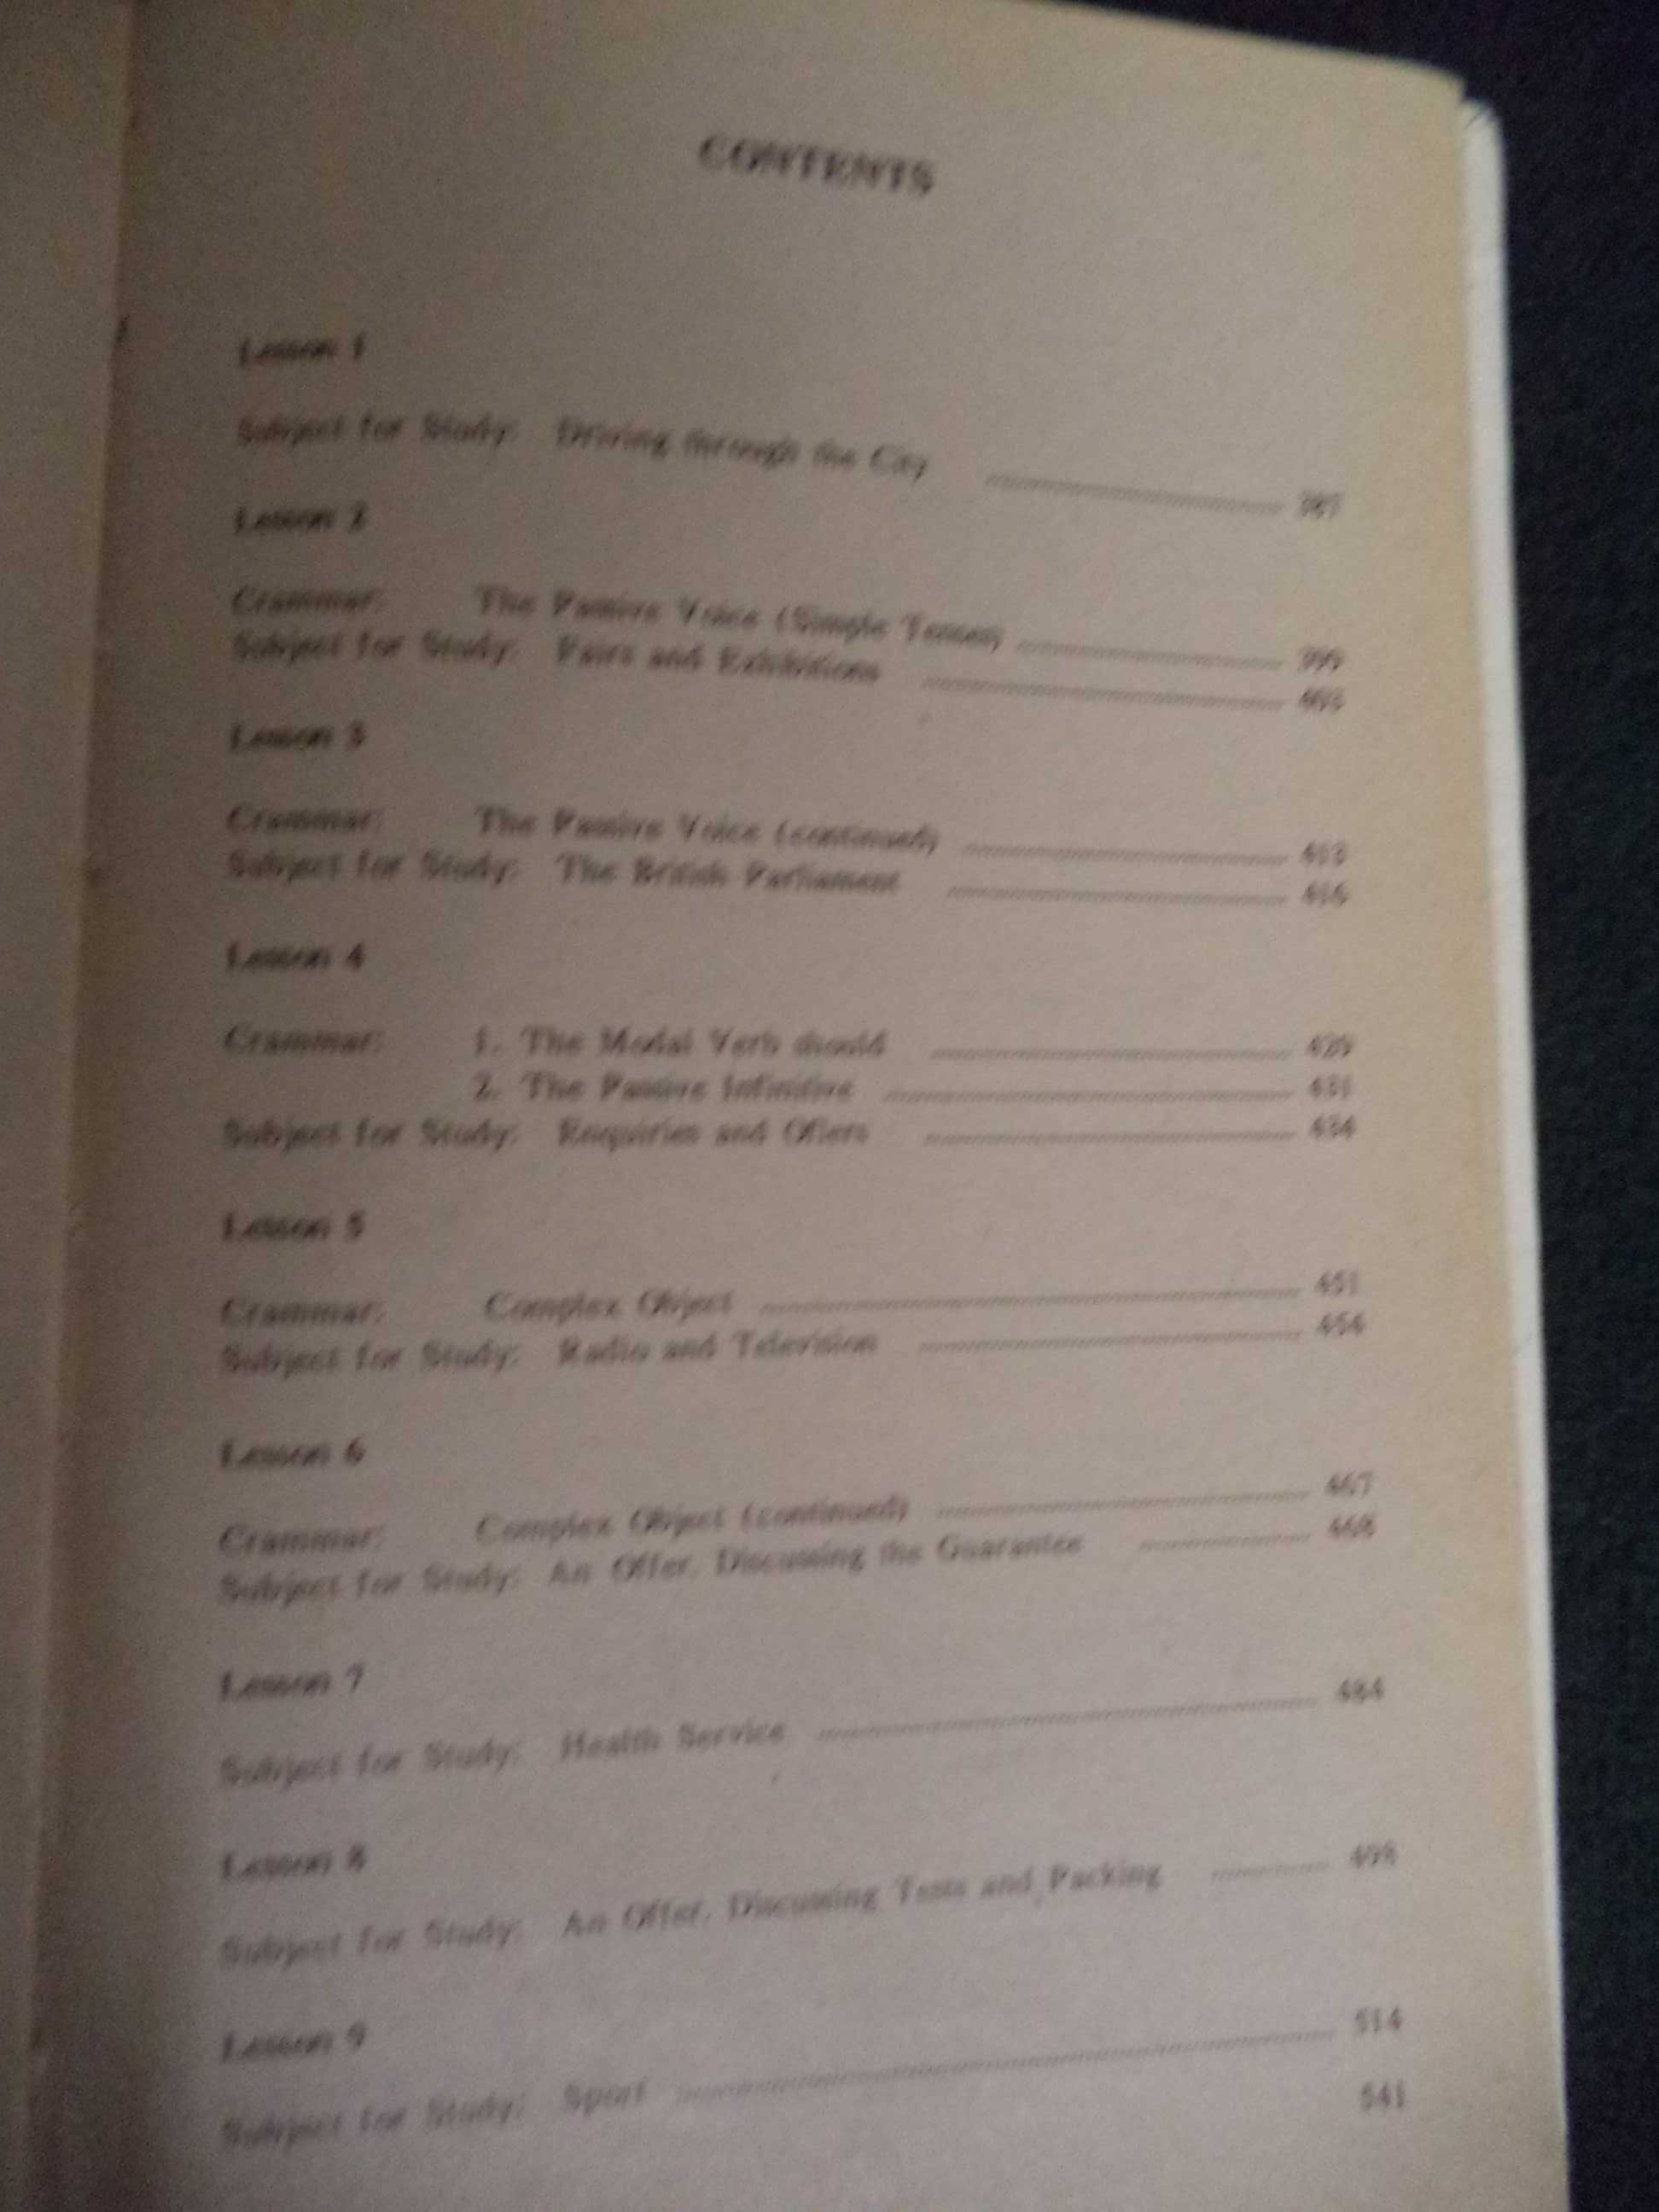 Учебник английского языка для делового общения. 1996г.